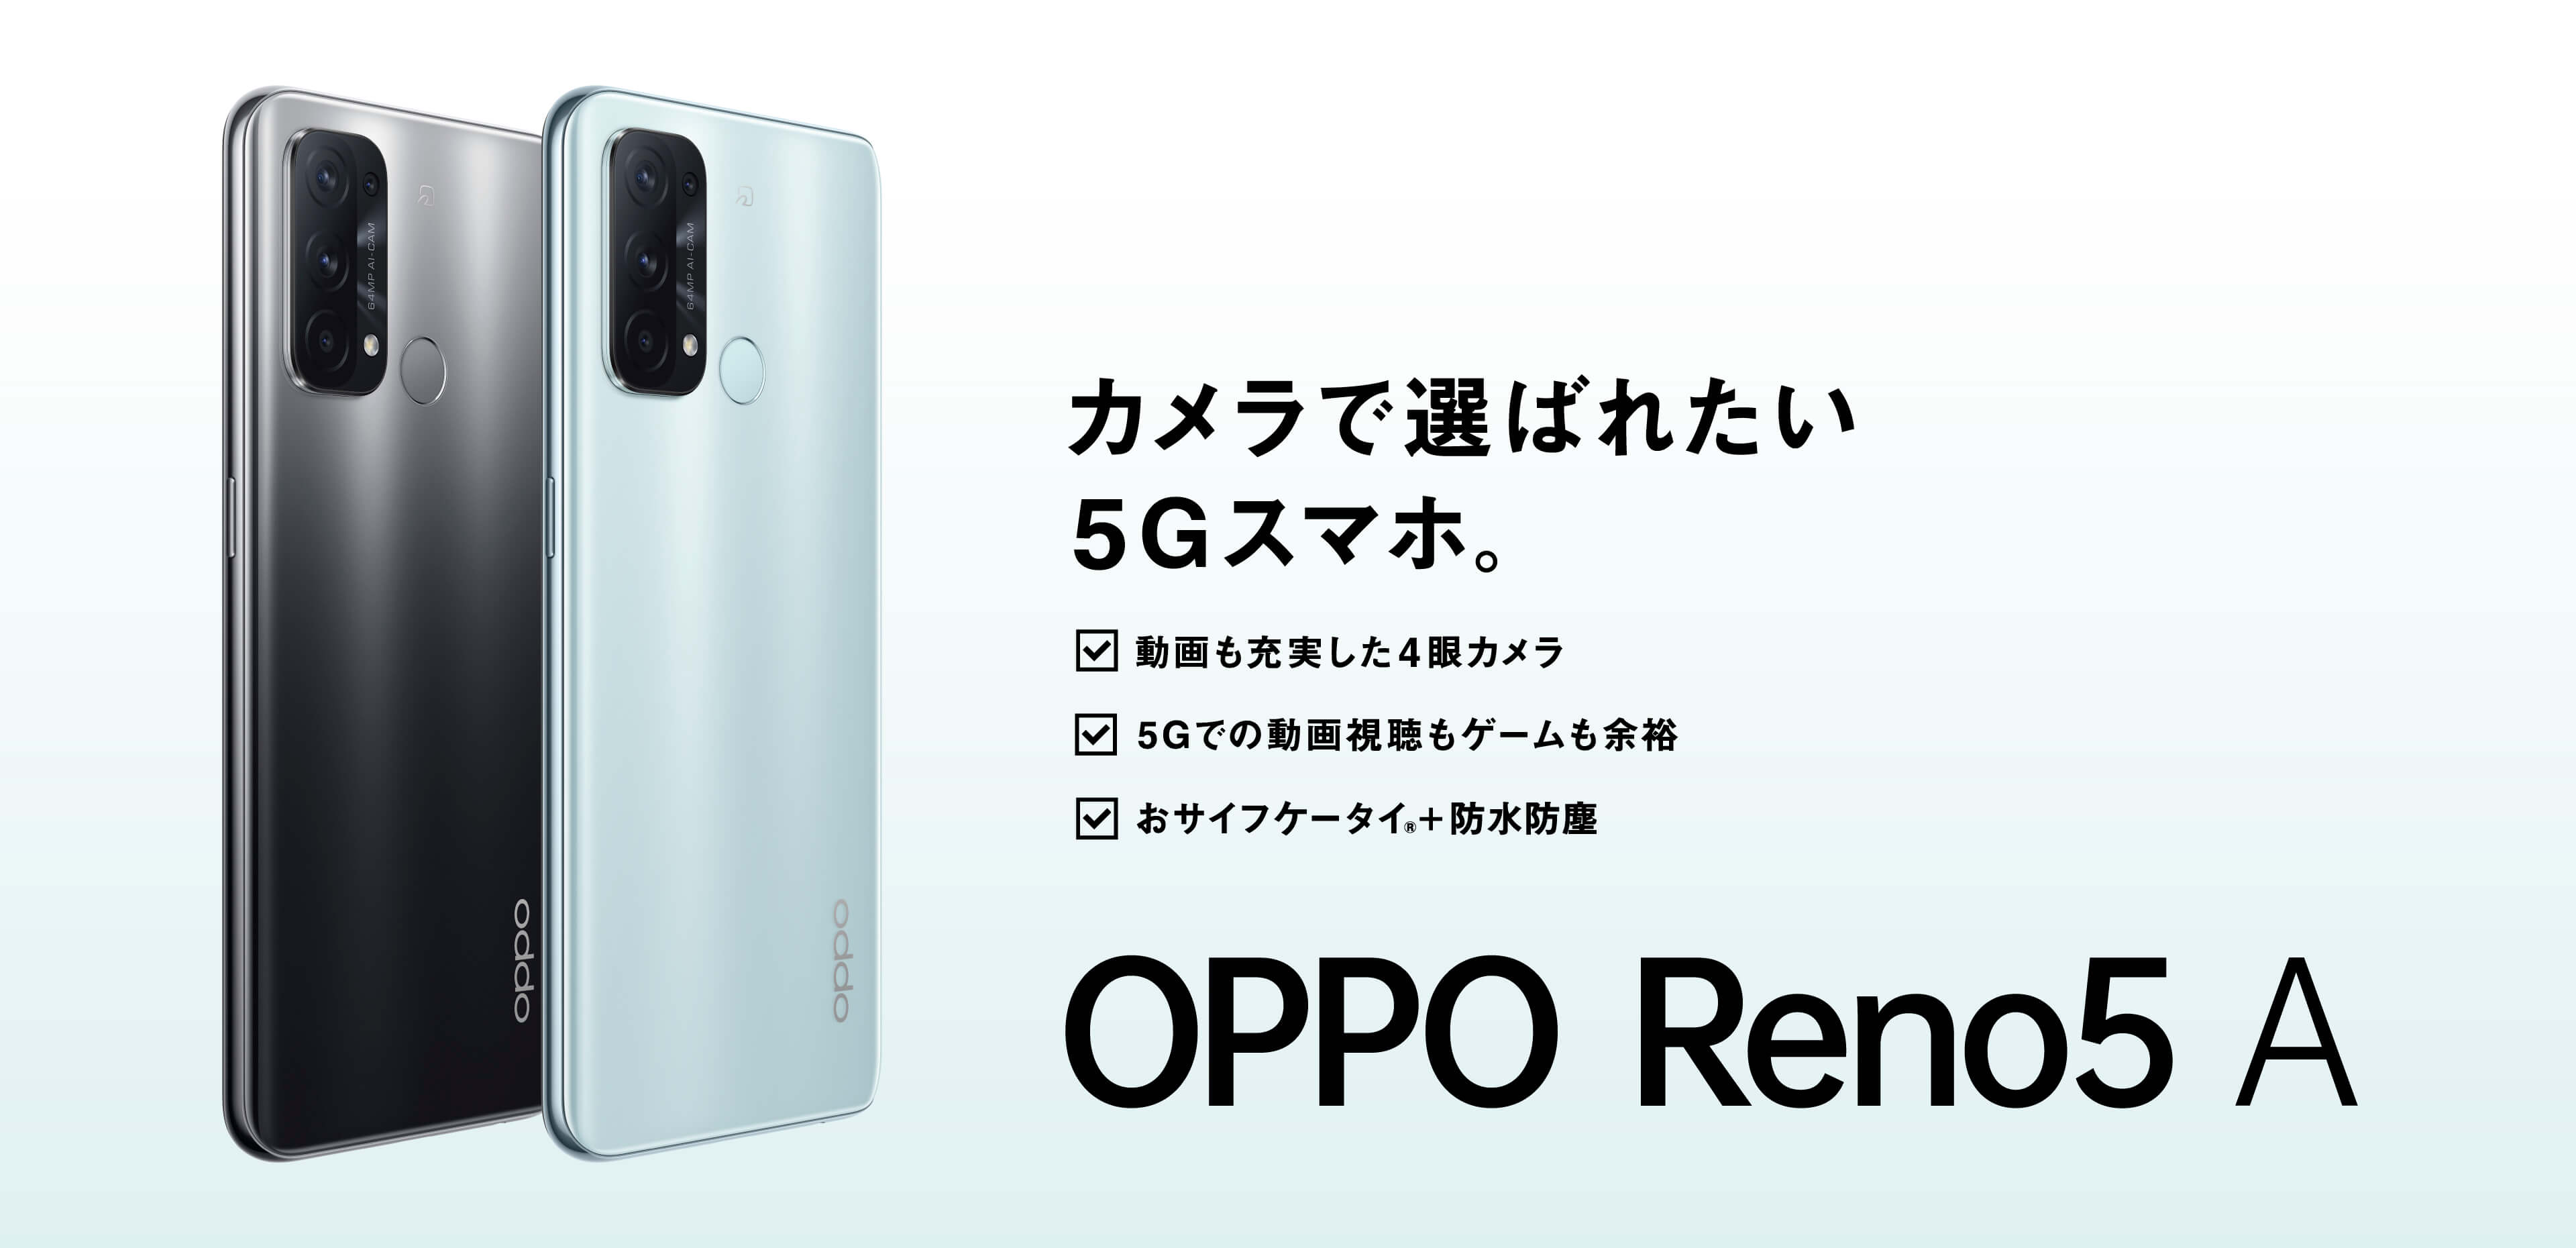 OPPO Reno5 A | オウガ・ジャパン